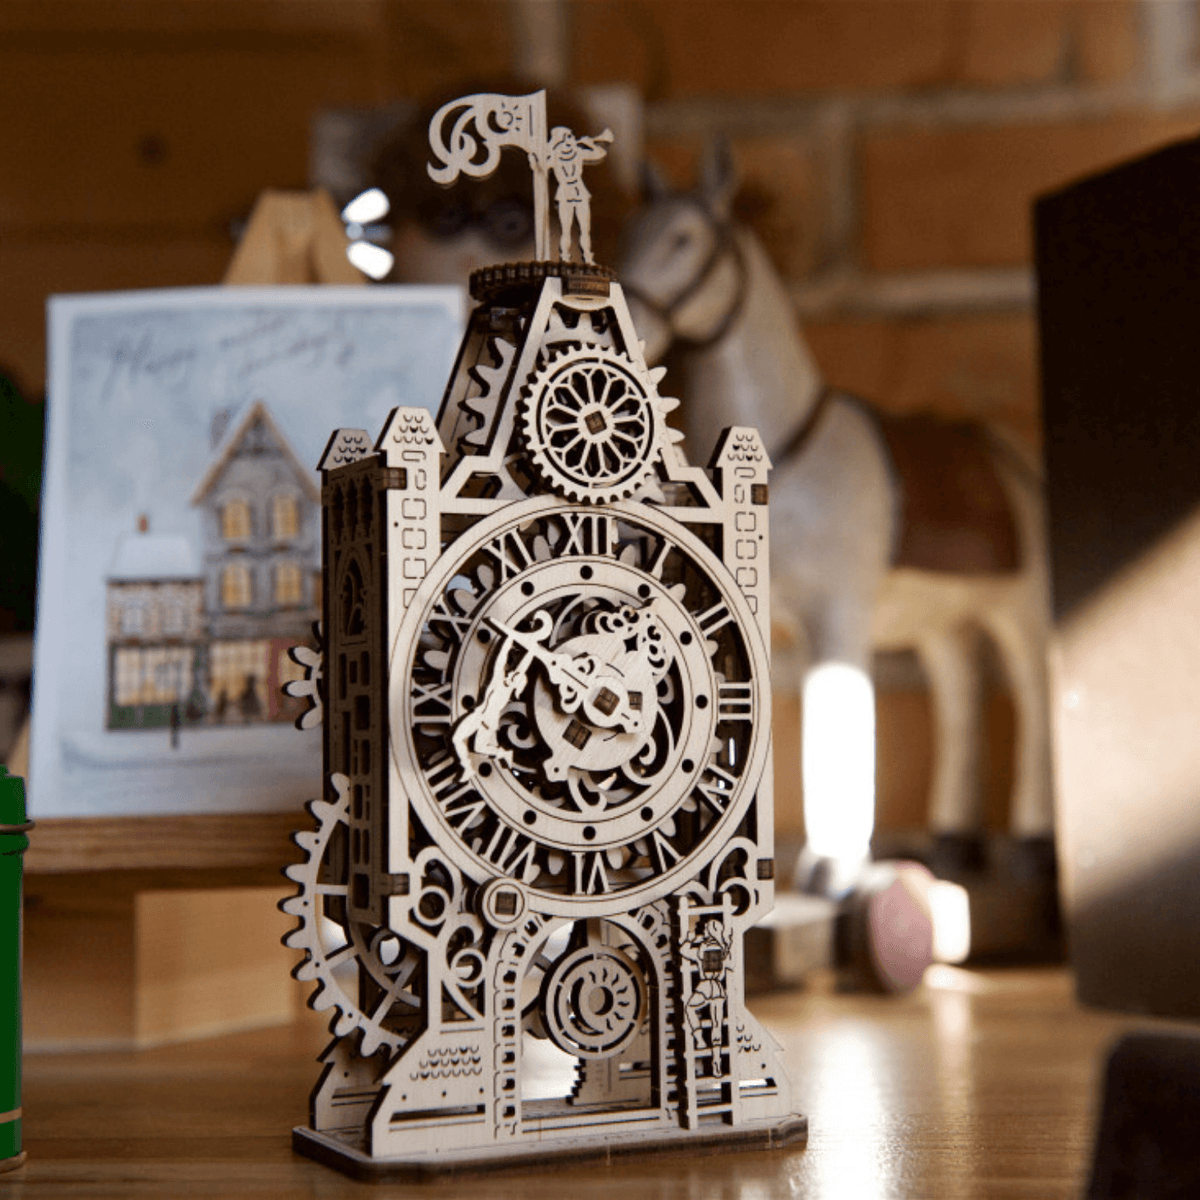 Tour de l'horloge-Puzzle mécanique en bois-Ugears--